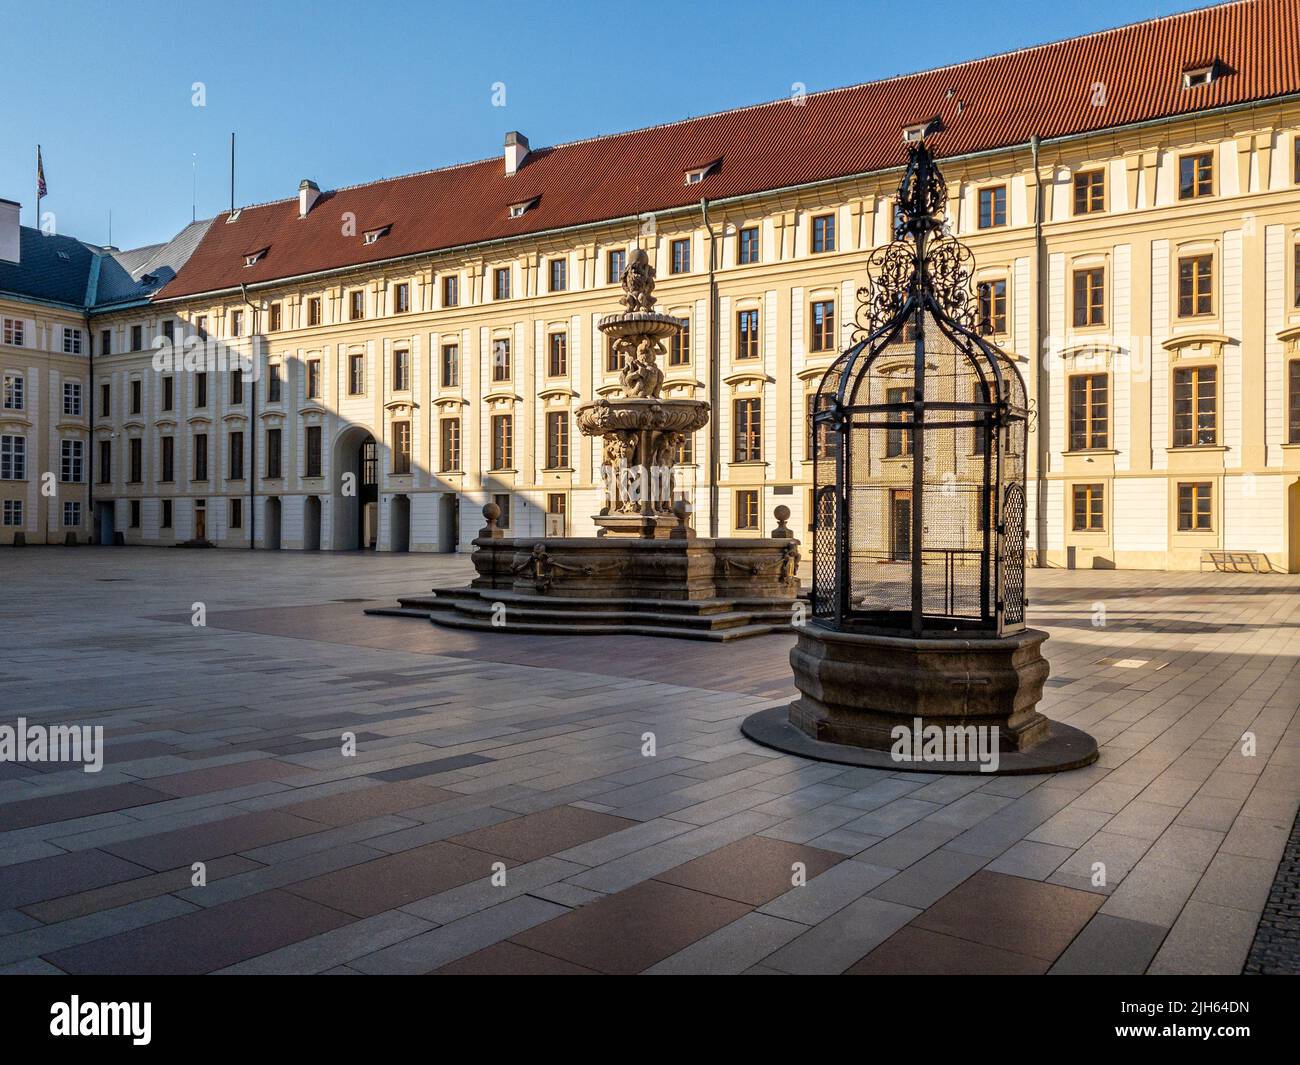 Rues étroites, escaliers et palais merveilleux du château de Prague. Une vue unique sans une foule de touristes sur un merveilleux matin de printemps. Château de Prague Banque D'Images